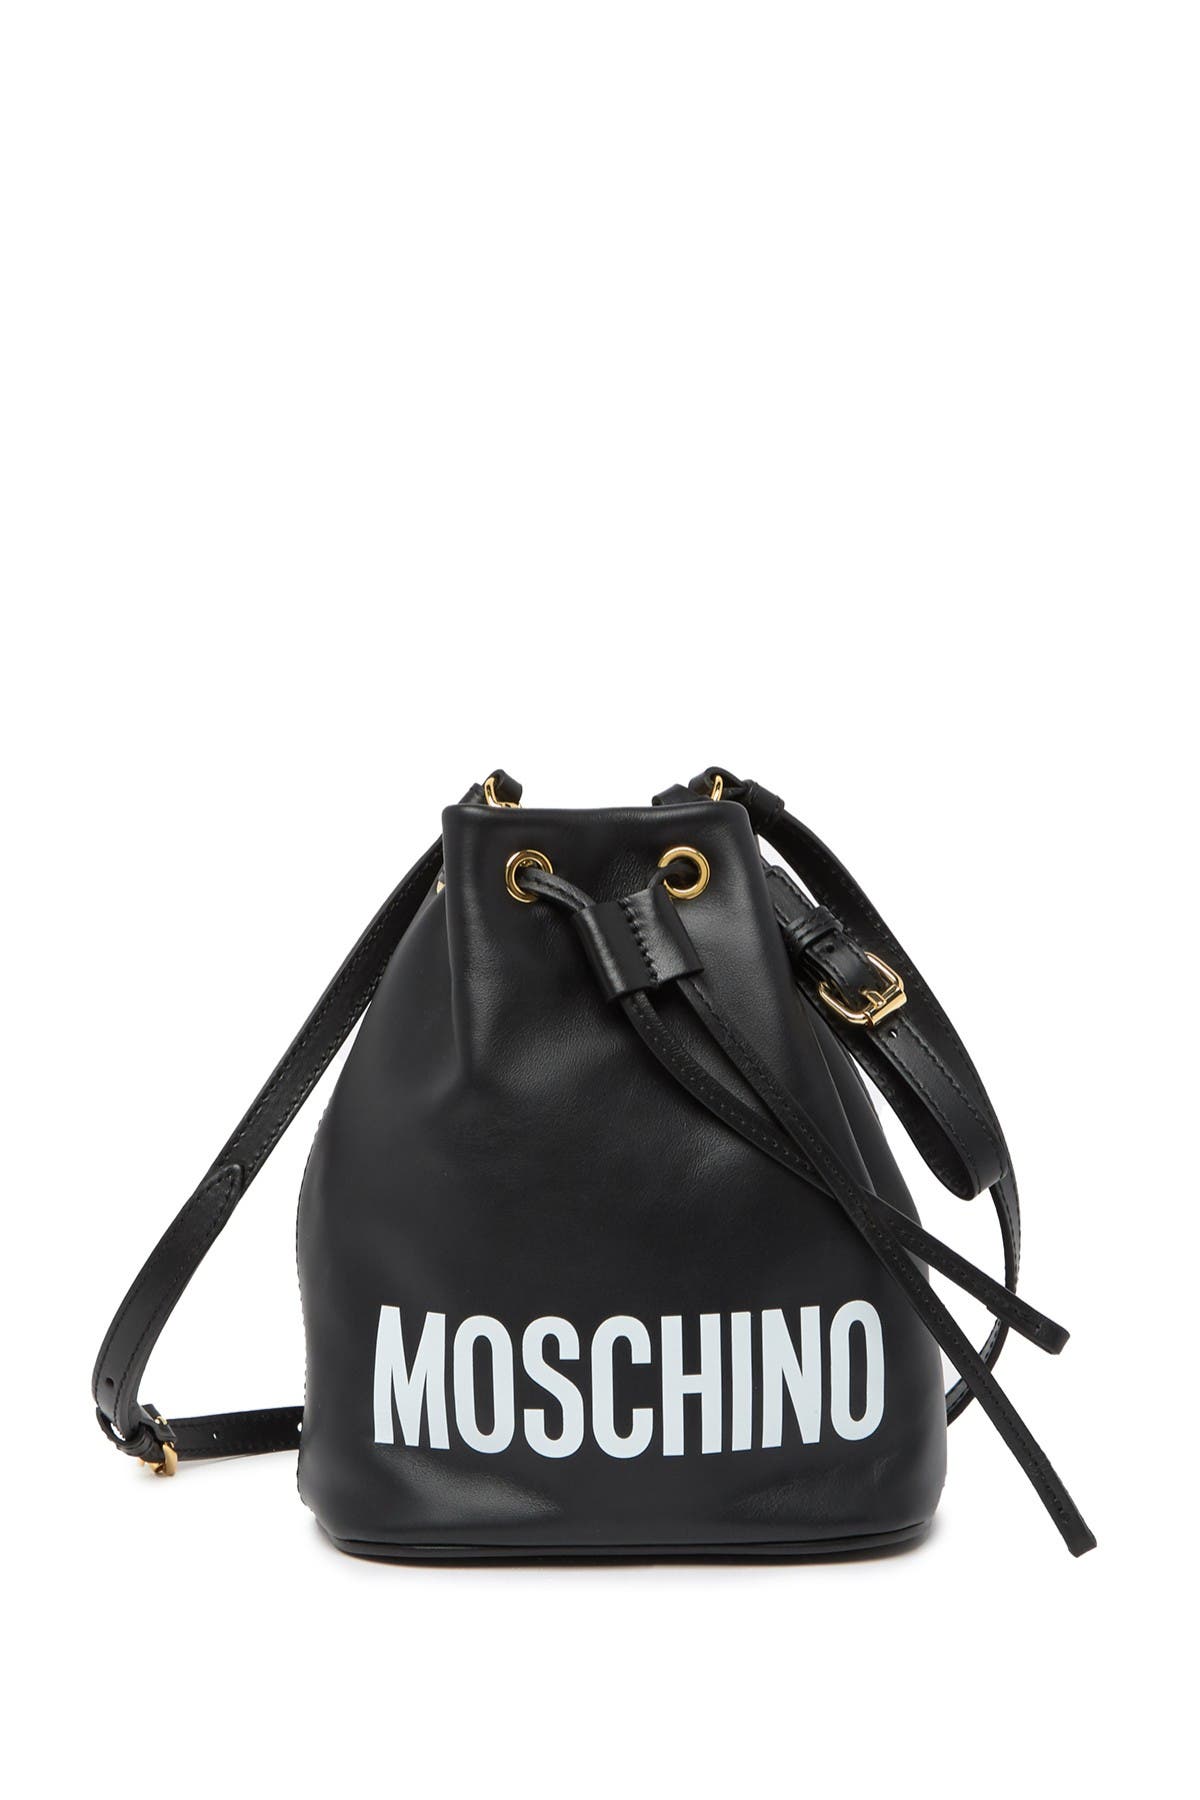 MOSCHINO | Logo Leather Bucket Bag 